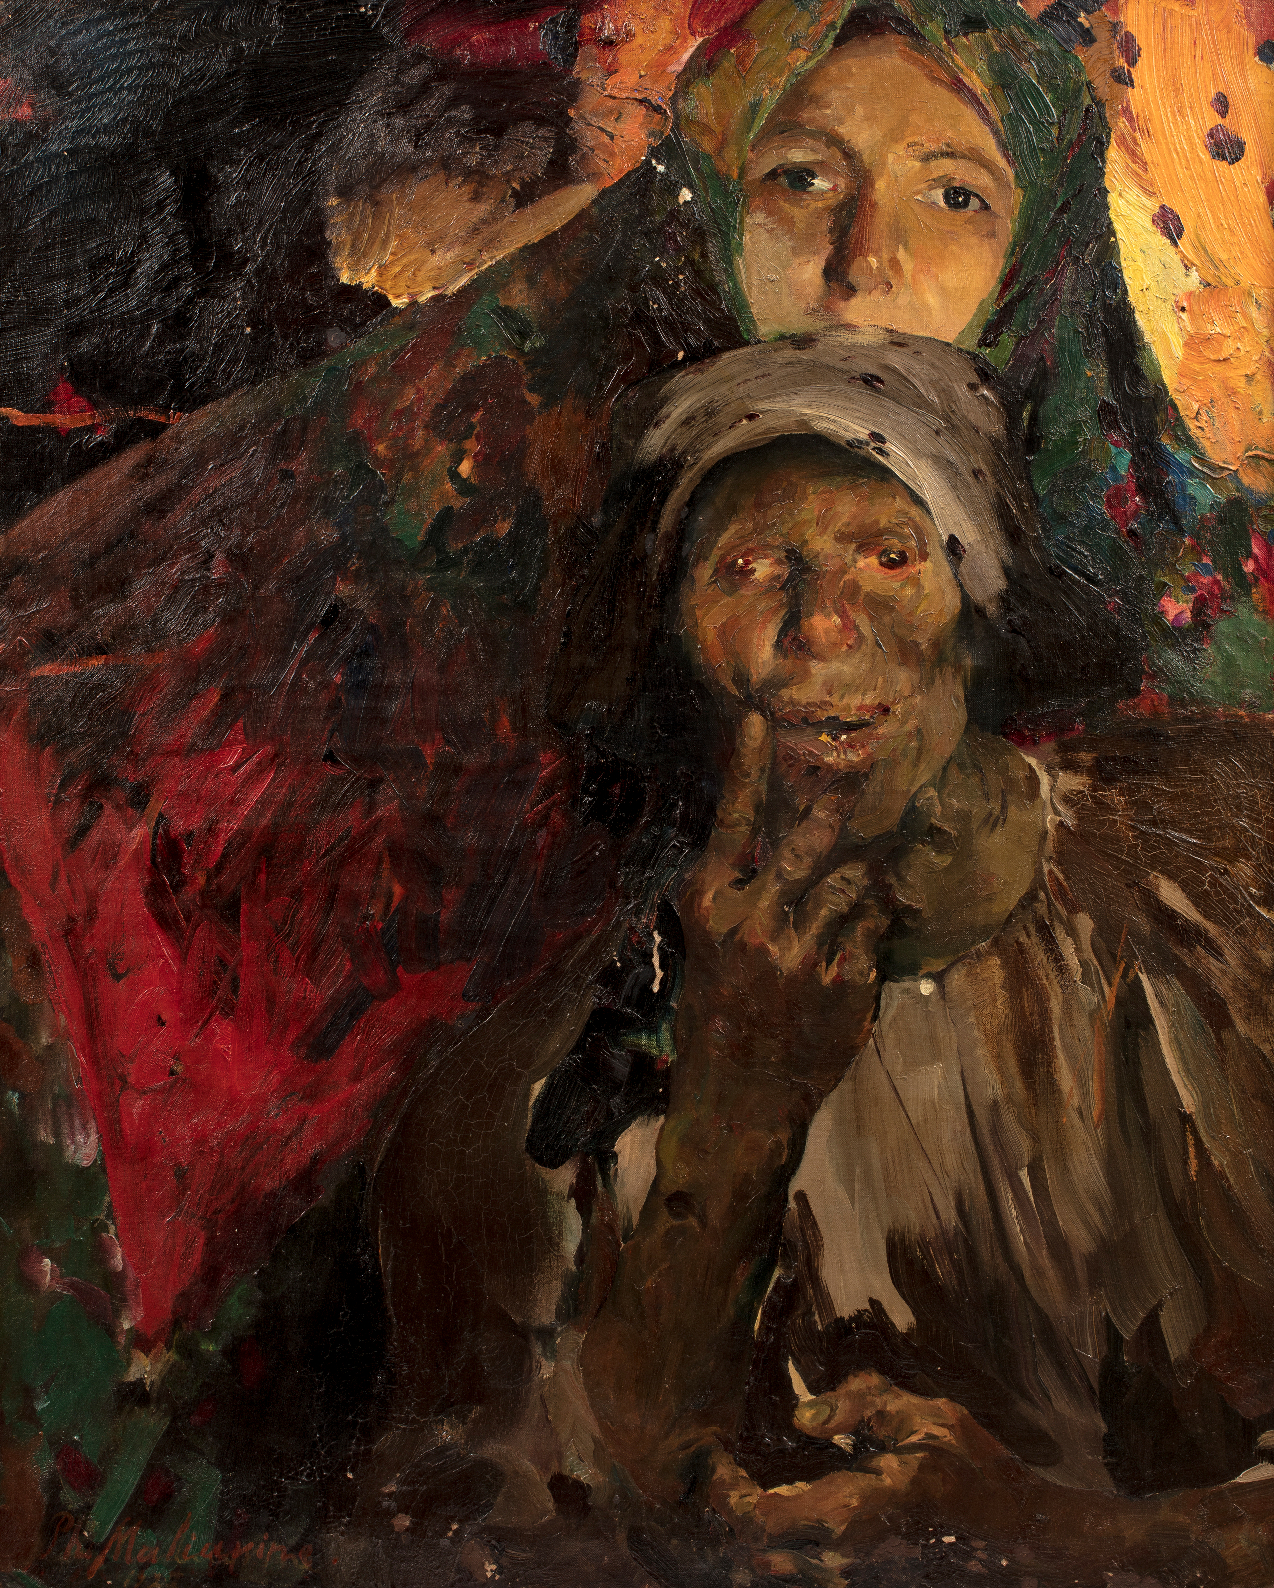 ФИЛИПП МАЛЯВИН (1869–1940)
Две крестьянки
Холст, масло, 100 x 80 см